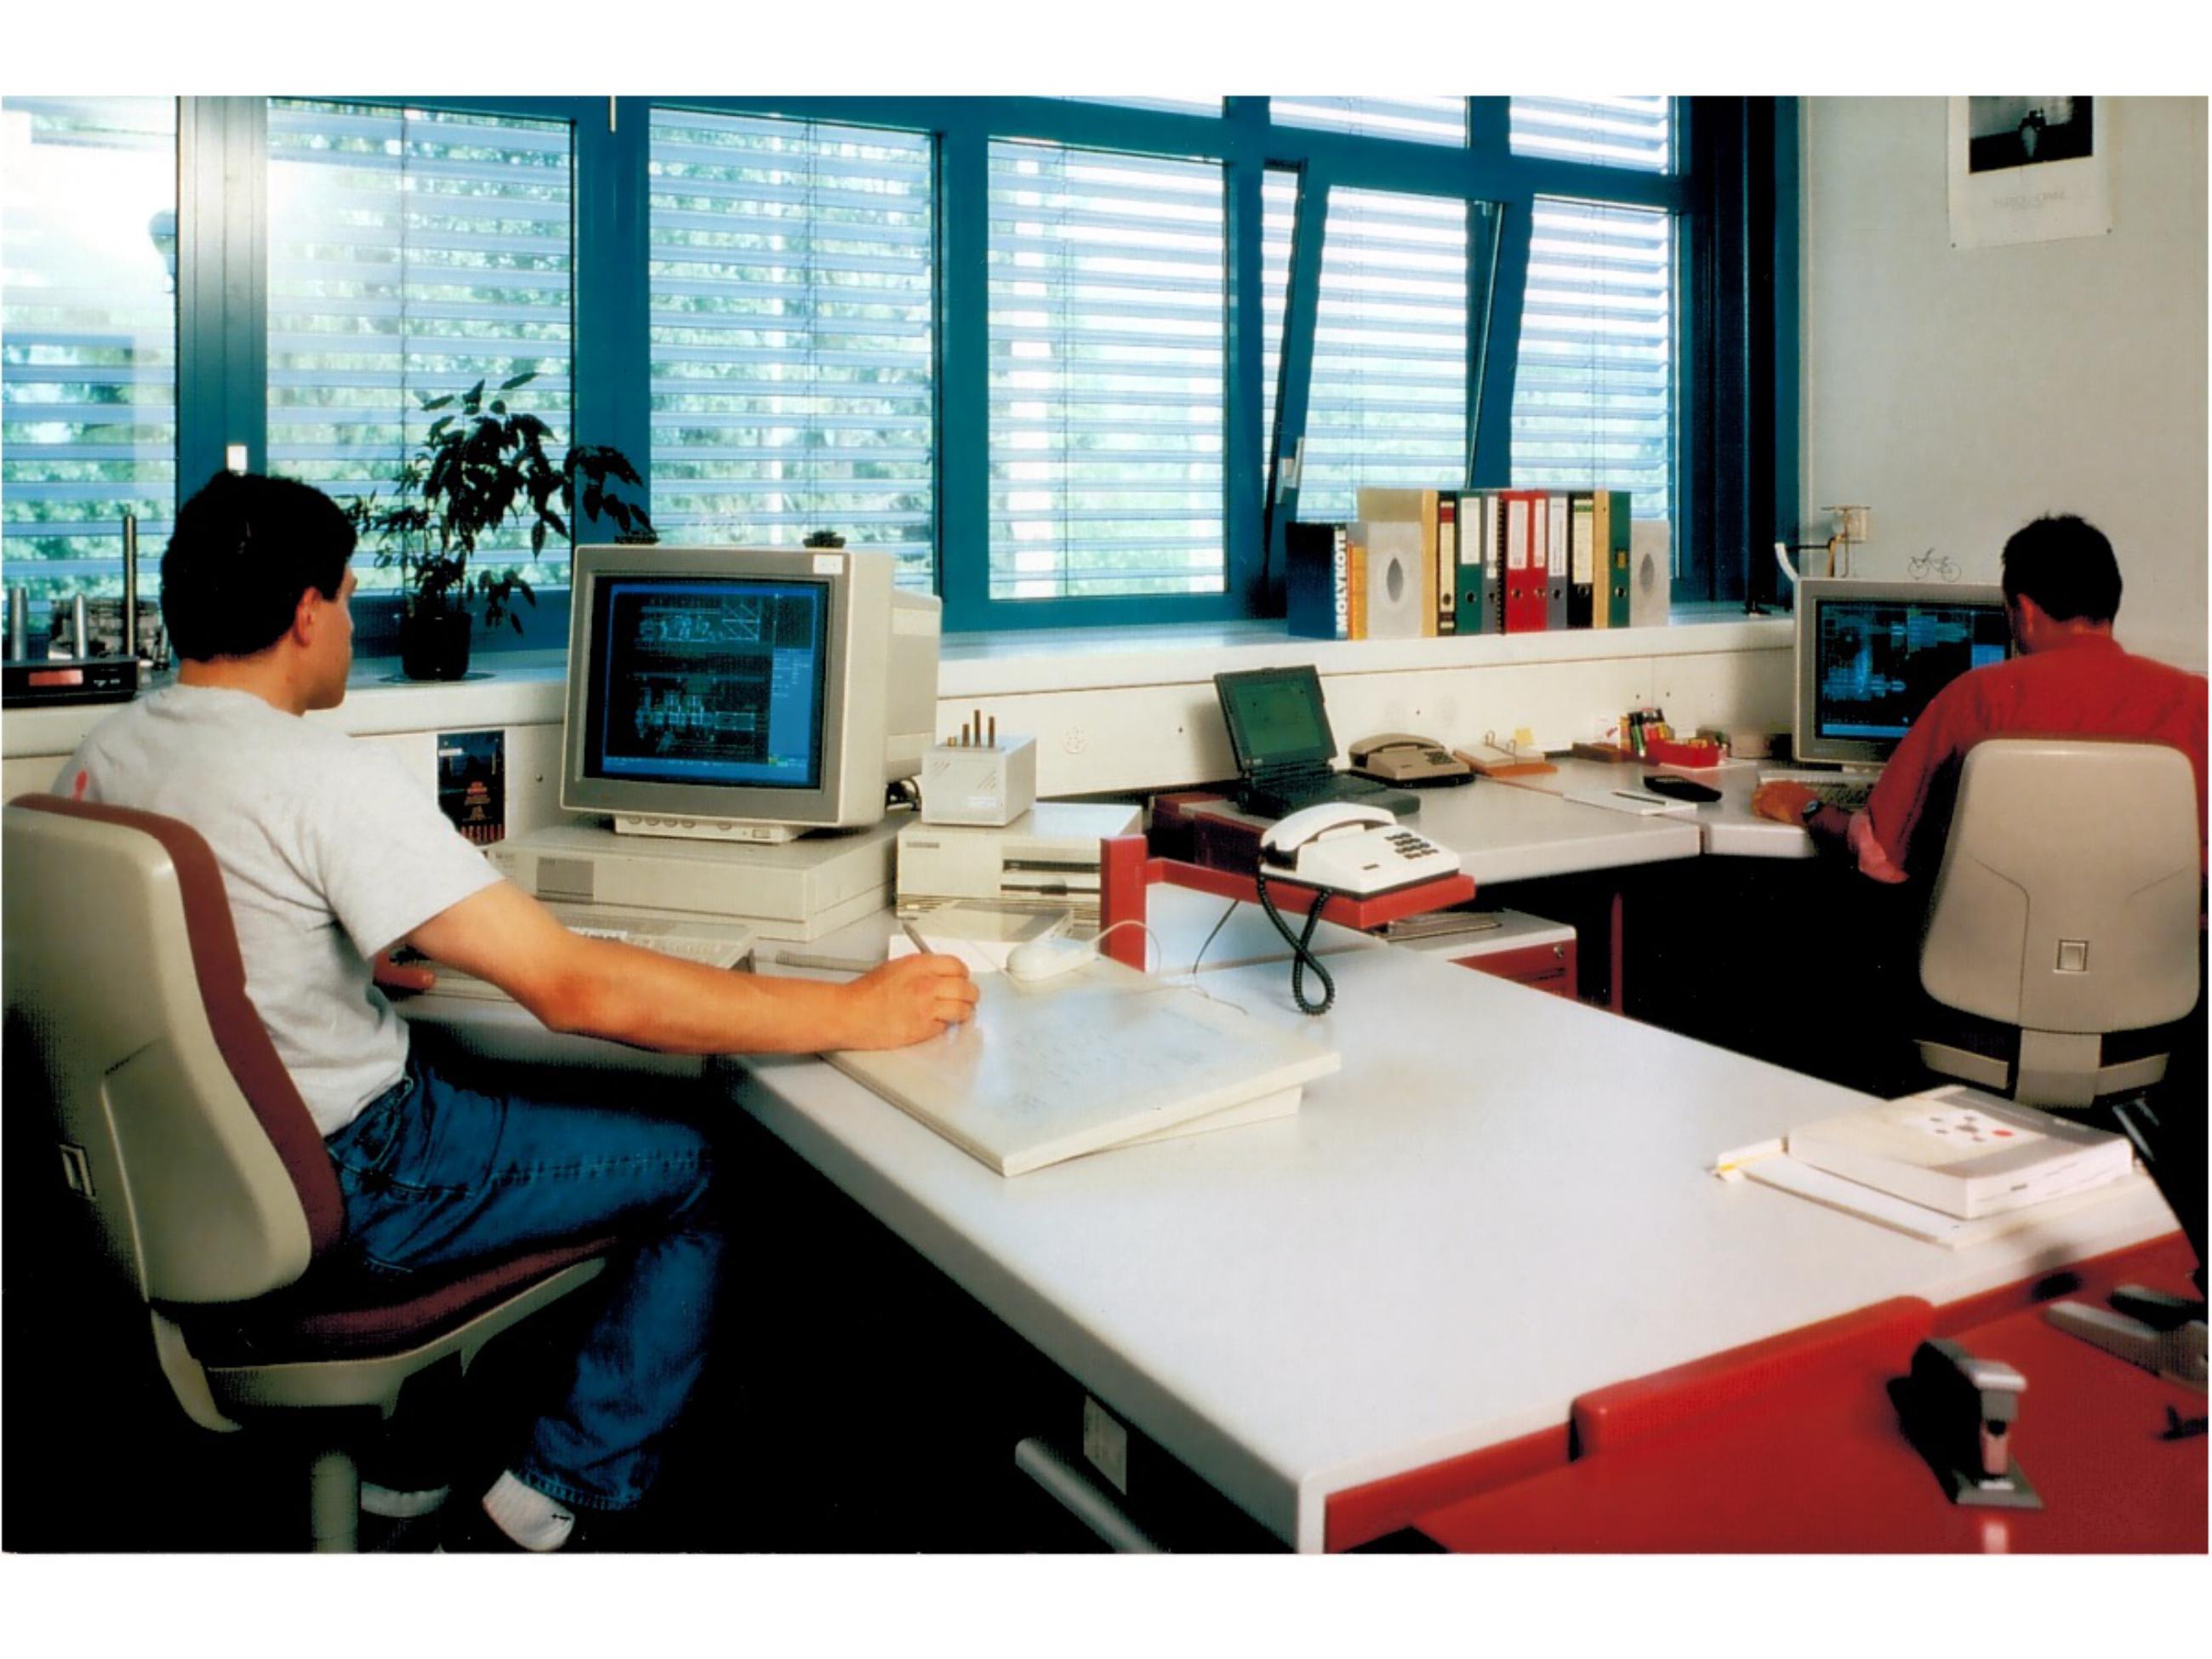 Nobs Büro 1990